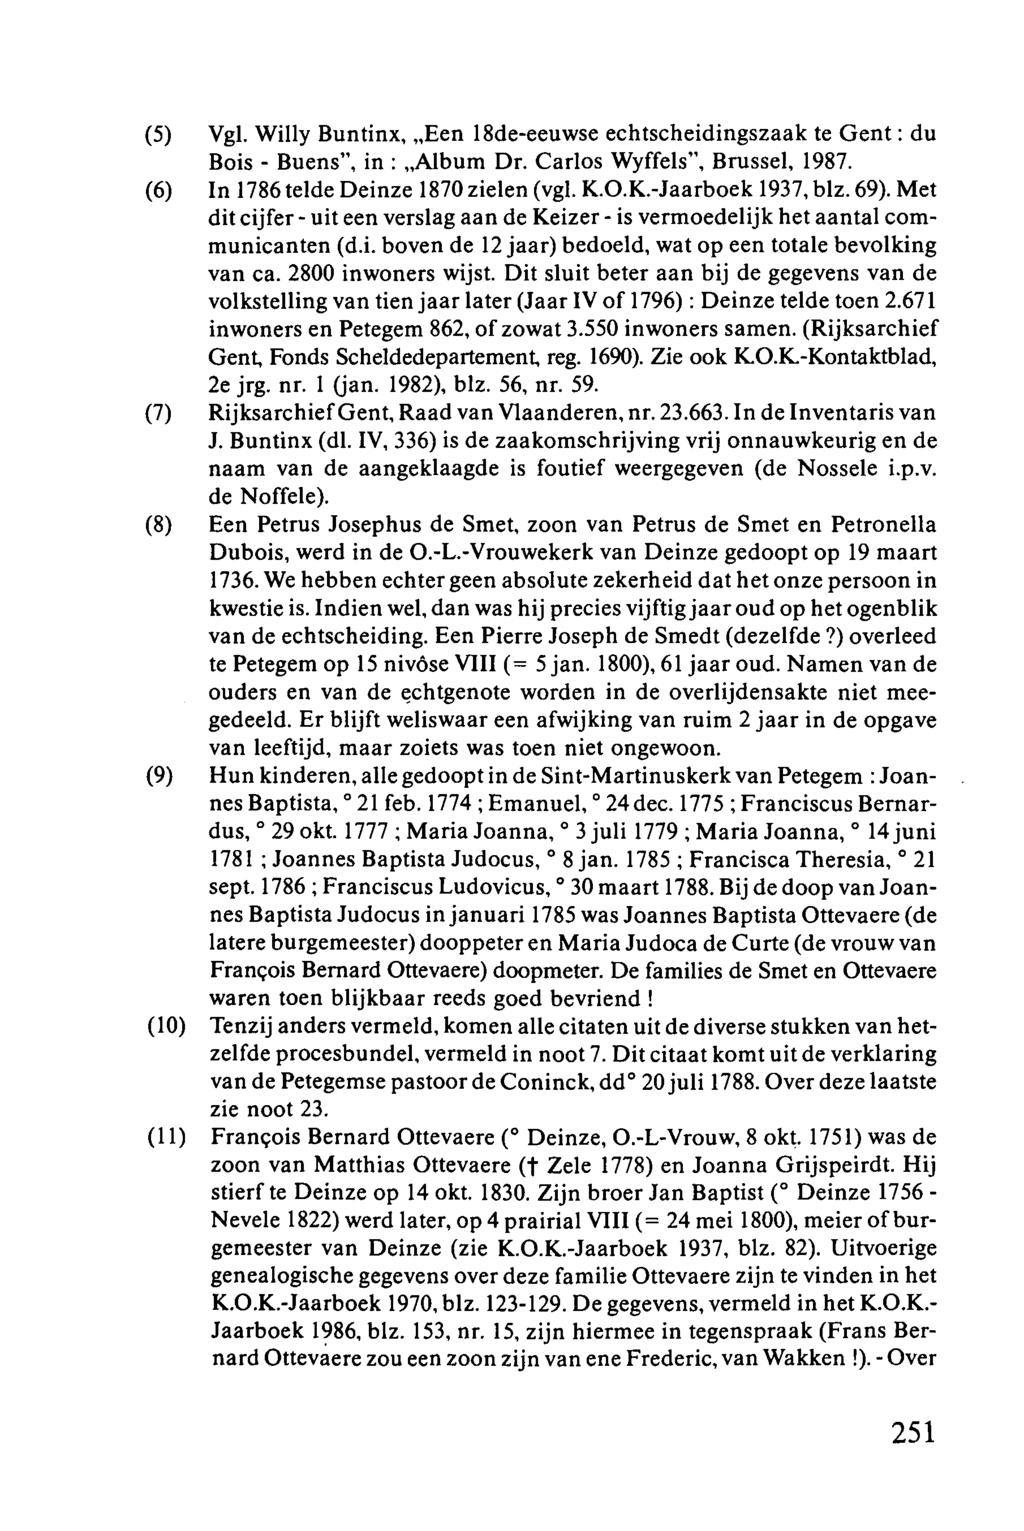 (5) Vgl. Willy Buntinx, "Een l8de-eeuwse echtscheidingszaak te Gent: du Bois - Buens", in: "Album Dr. Carlos Wyffels", Brussel, 1987. (6) In 1786 telde Deinze 1870 zielen (vgl. K.O.K.-Jaarboek 1937, blz.